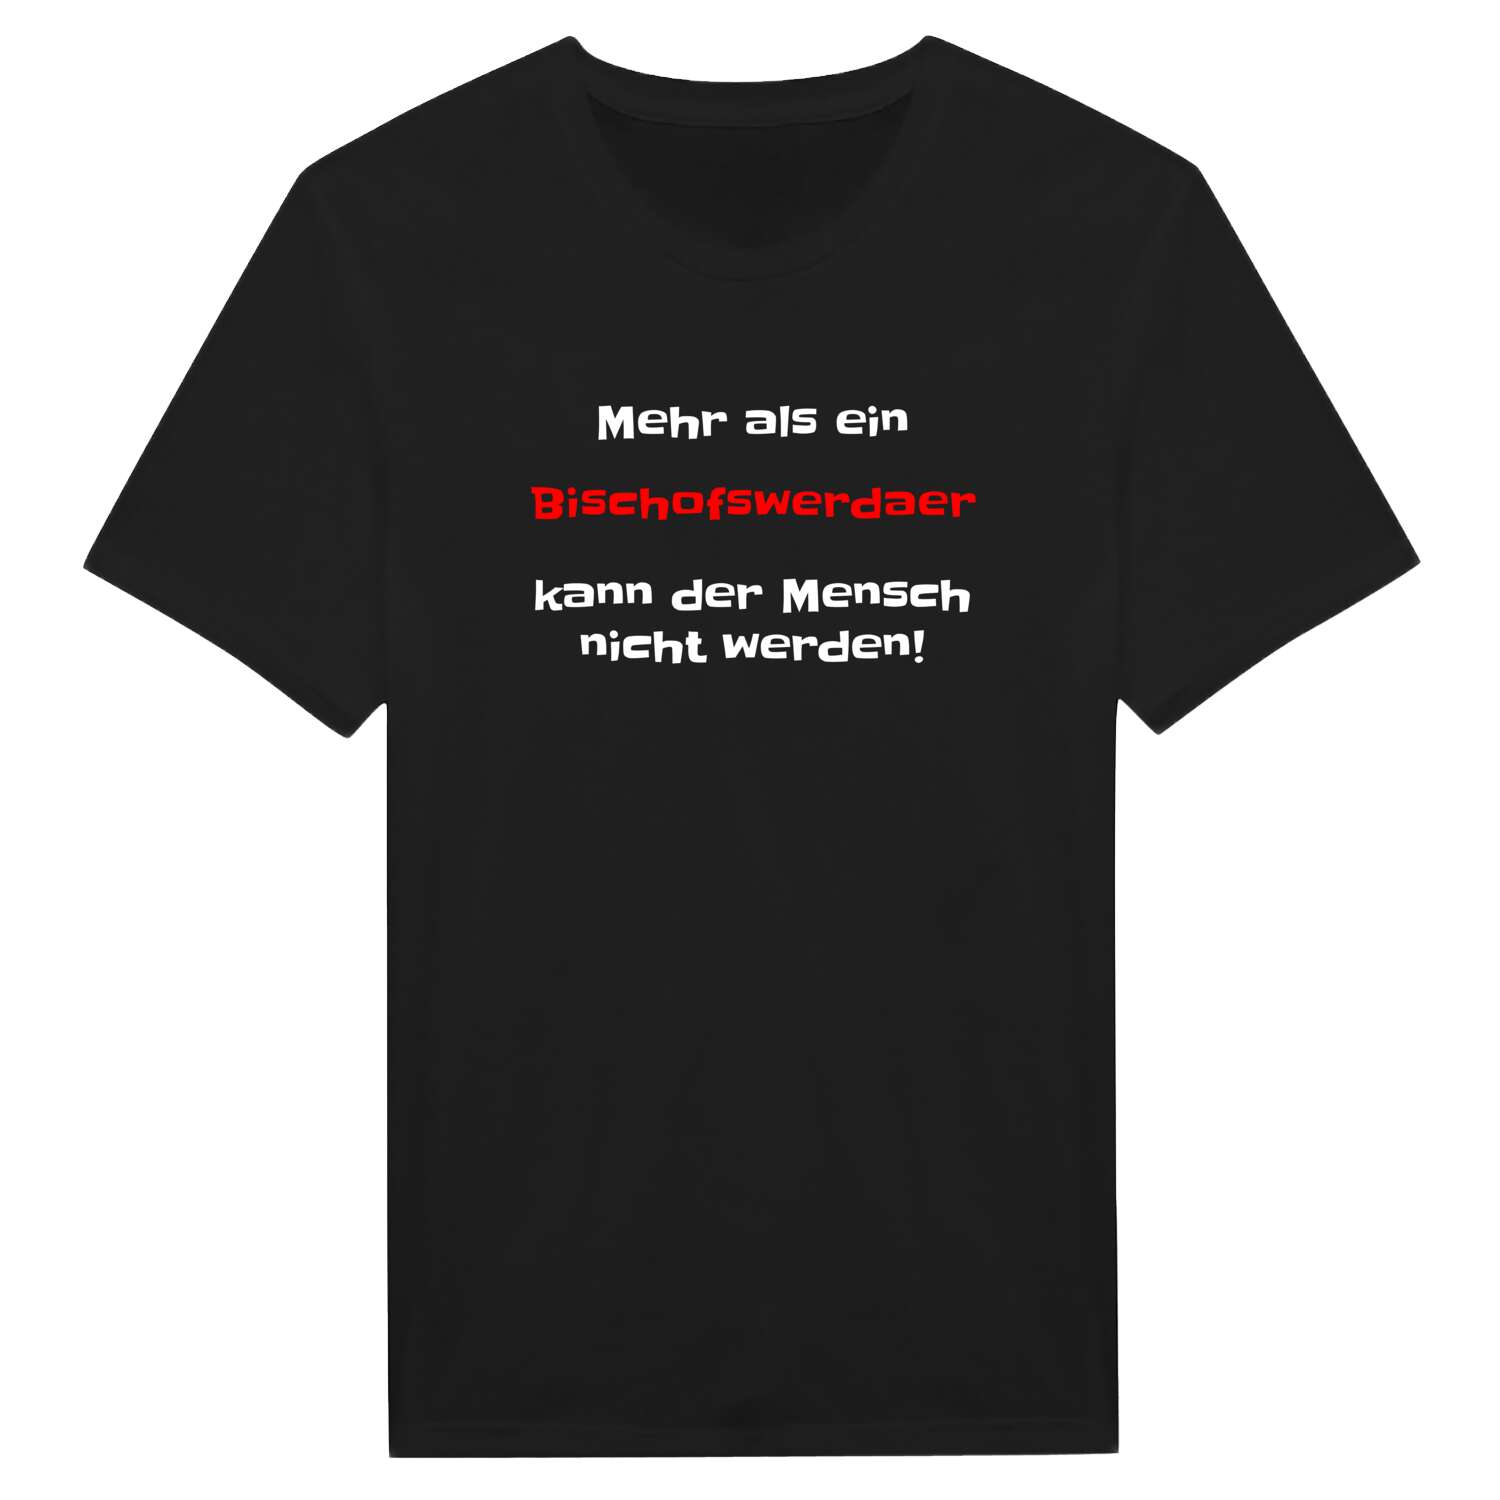 Bischofswerda T-Shirt »Mehr als ein«